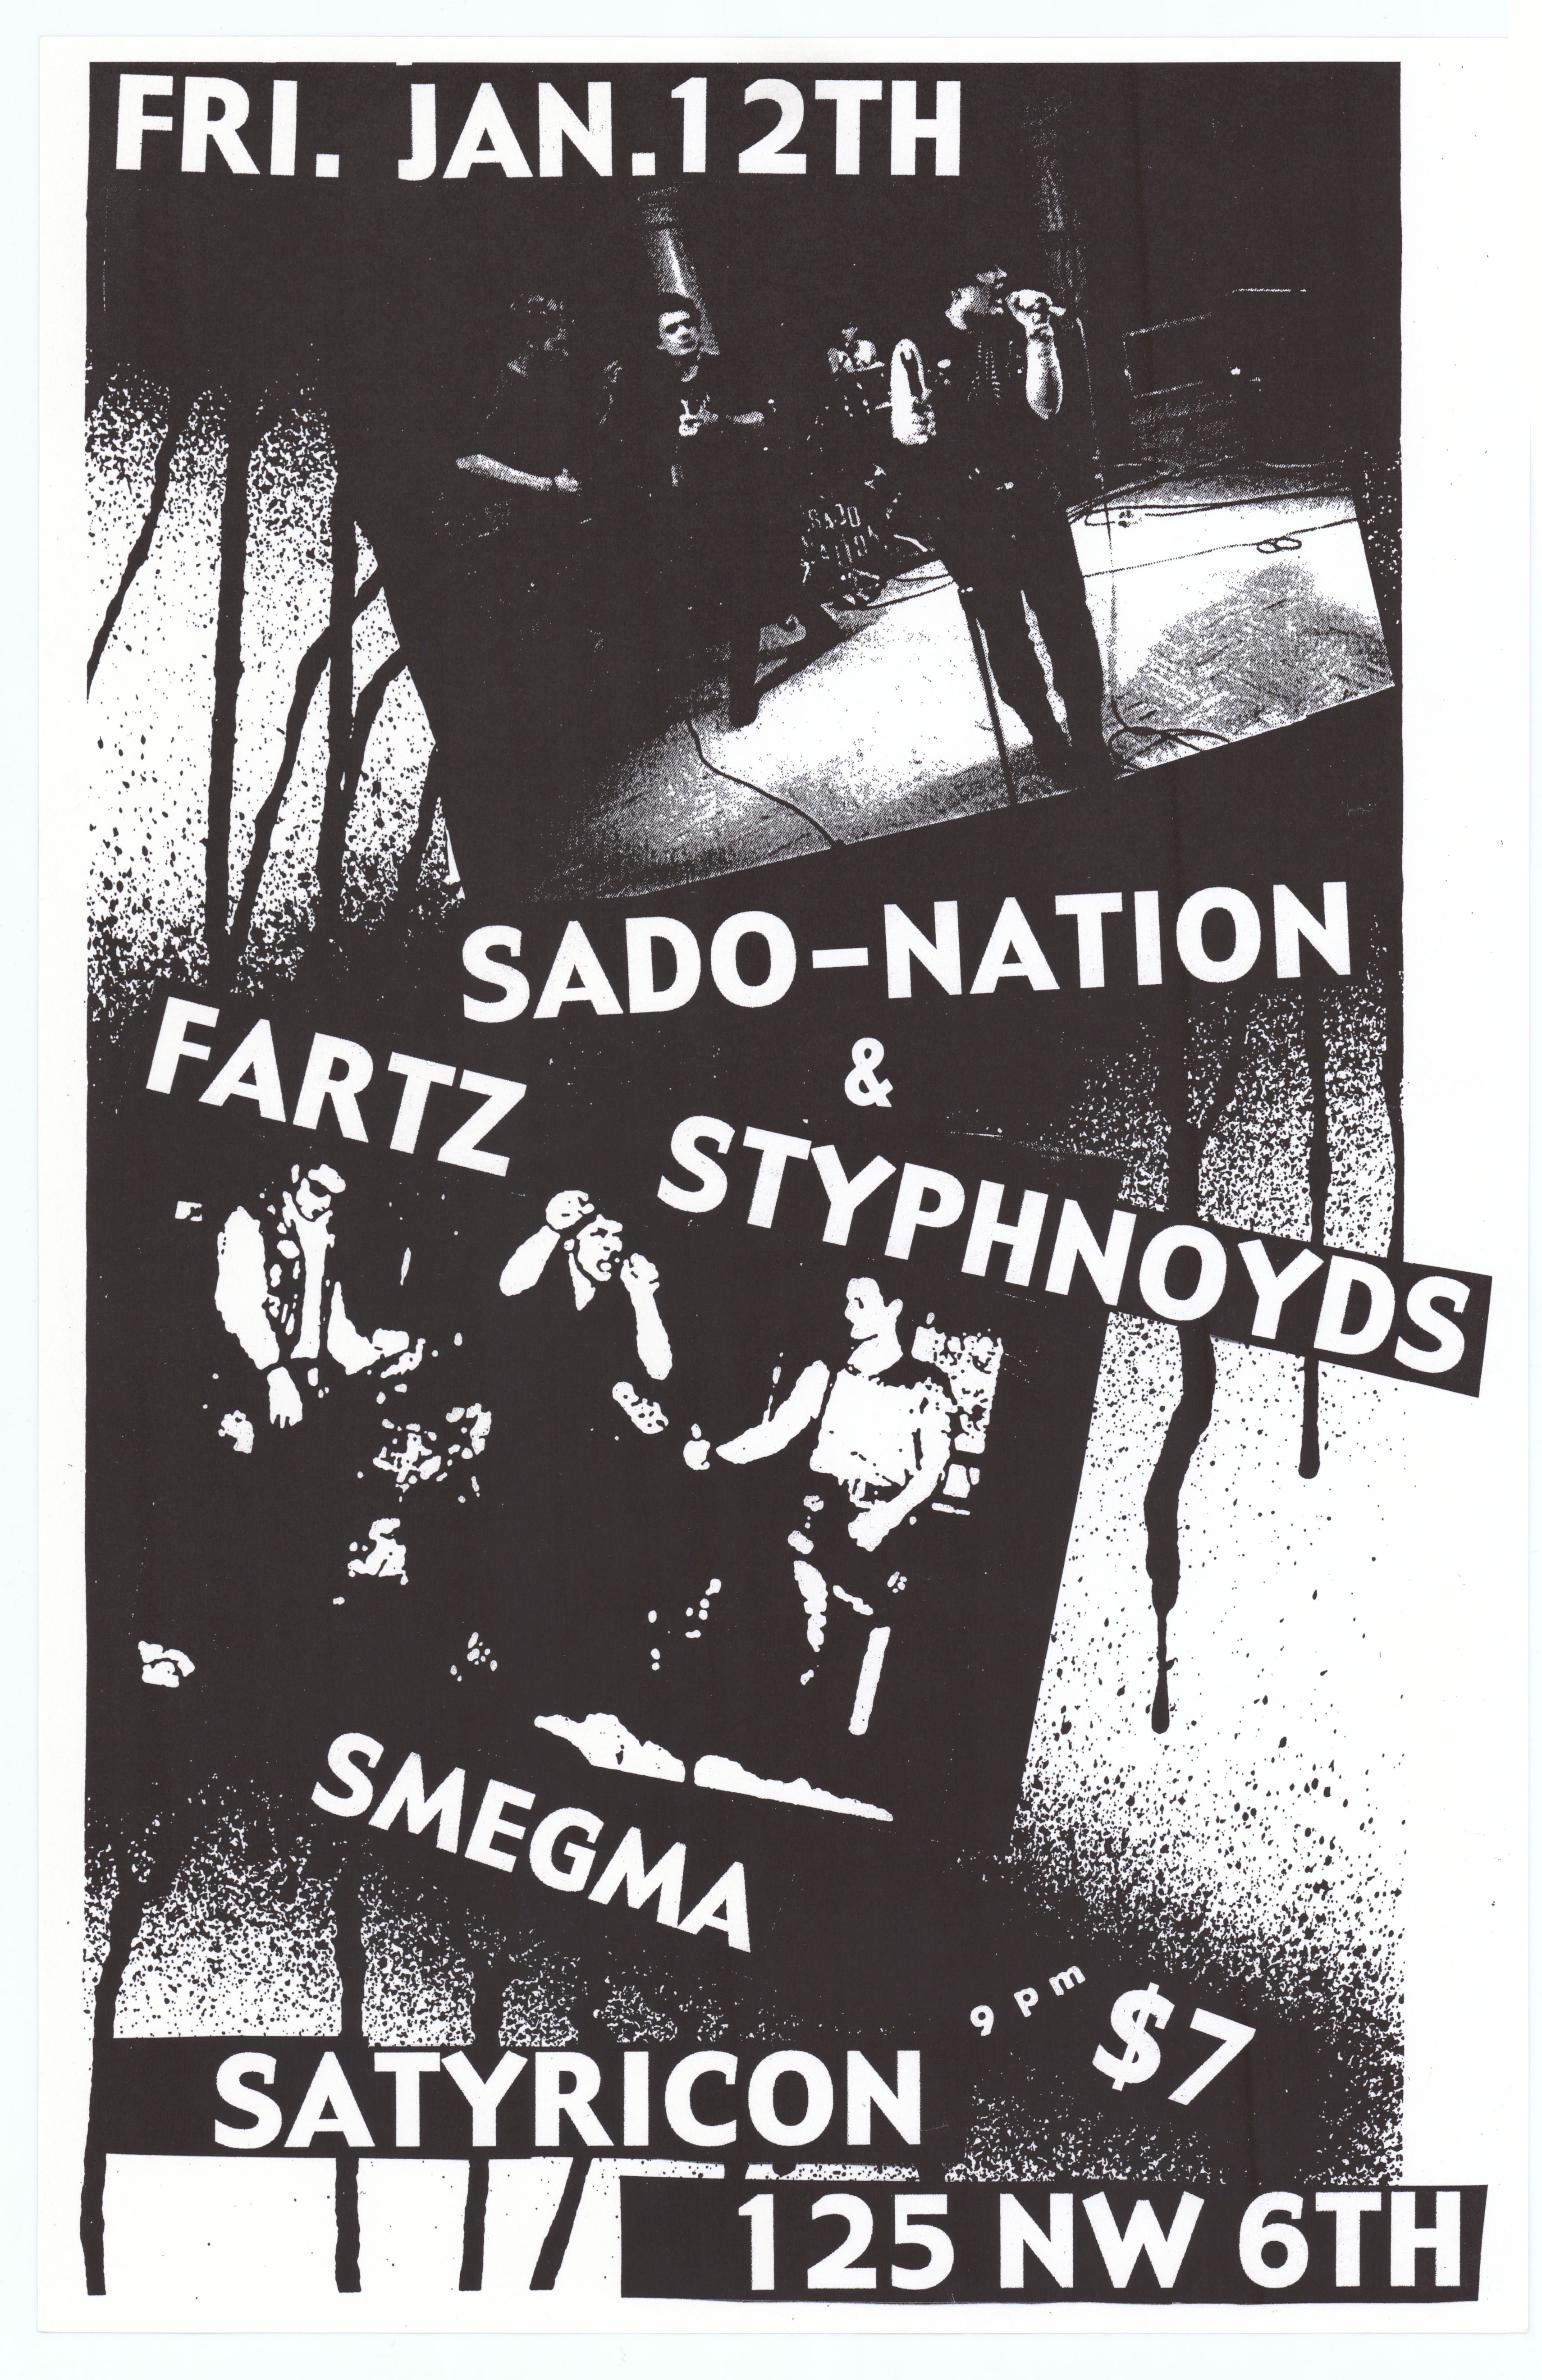 Sado-Nation Satyricon 1000-01-12 1000 Satyricon Jan 12 Concert Poster